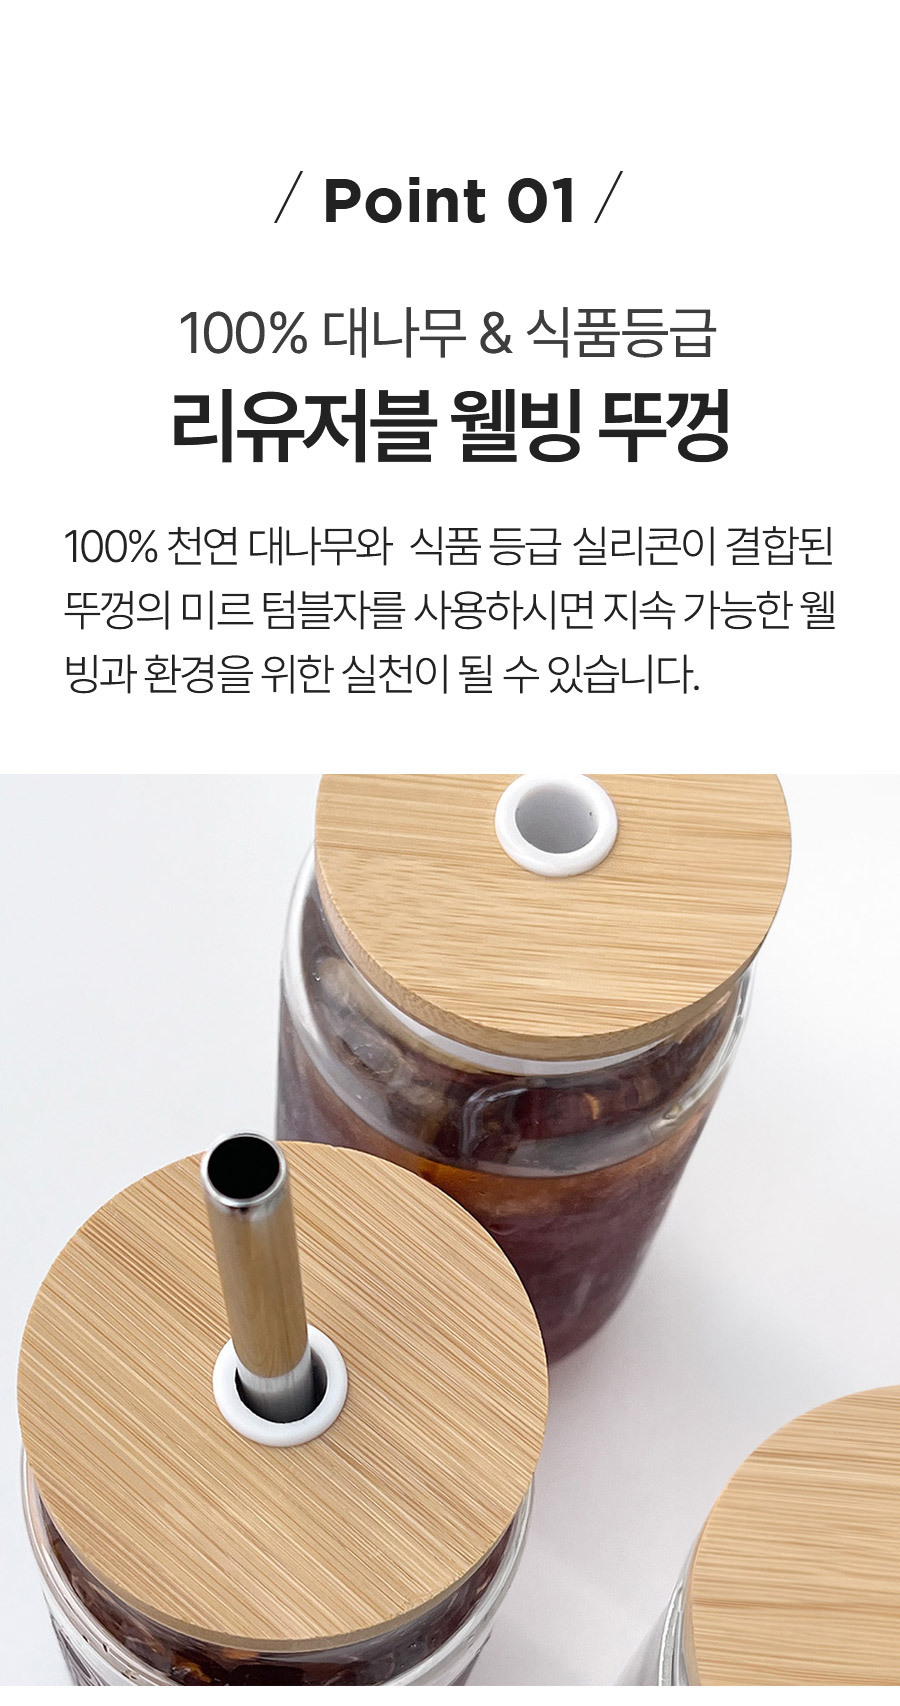 텀블자 뚜껑 대나무 대형 포인트01